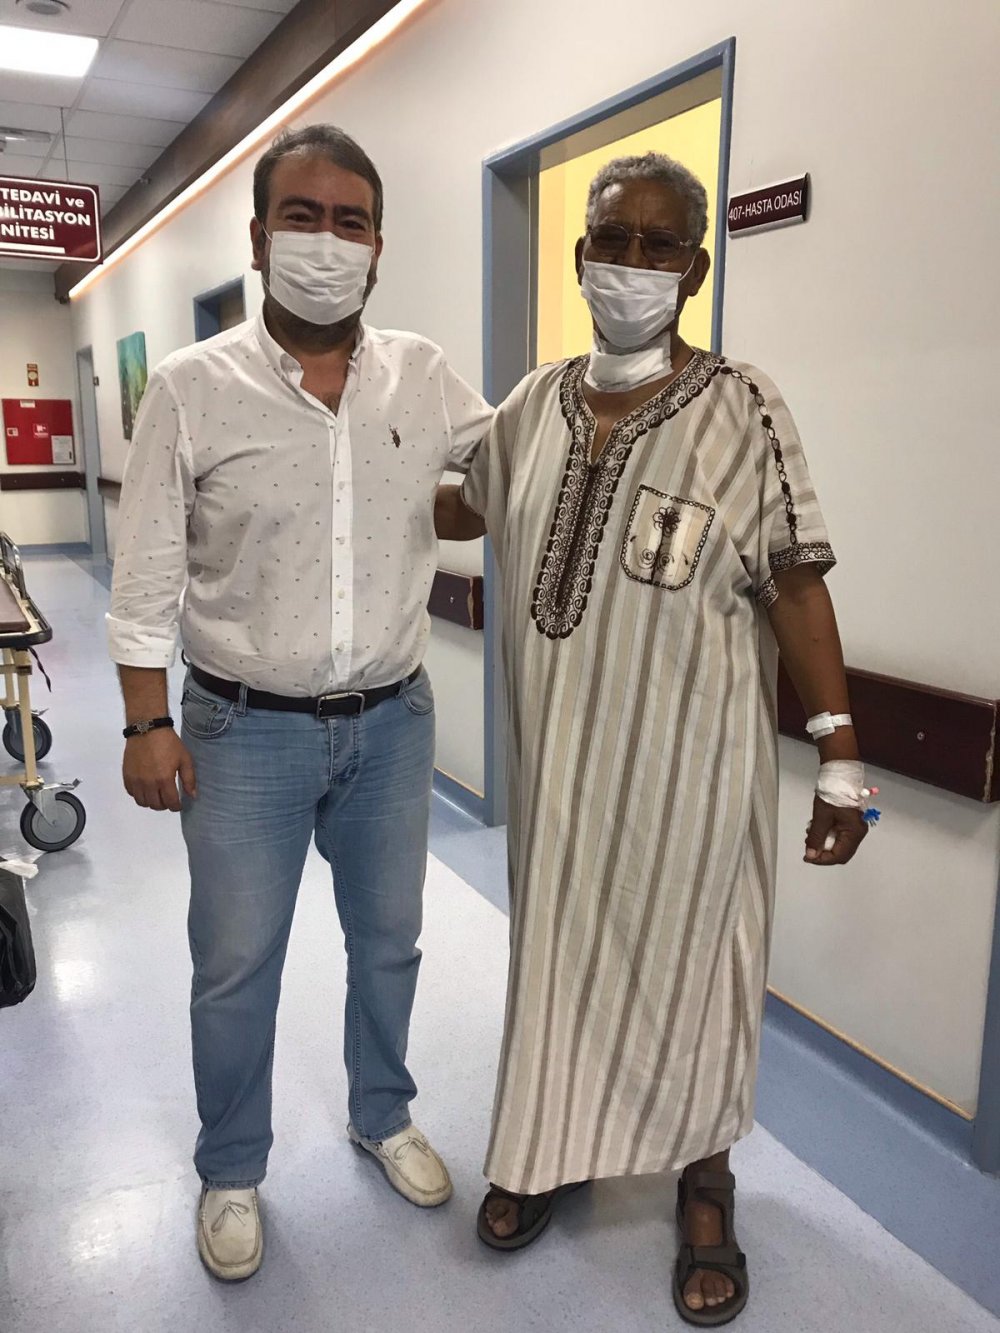 Sağlık taraması için tavsiye üzerine Doğu Afrika’nın Eritre şehrinden Denizli’ye gelen aile, Özel Denizli Cerrahi Hastanesi’nde şifa buldu. Gerçekleşen sağlık taramasında birçok hastalığı çıkan anne Meskela Araıa Ghebreıgzıabıher (69) ile baba Tsegay Tesfagabr Habtegabr (76), kızları Fiyori’nin refakatçiliğinde hastane hekimlerininin uyguladığı tedaviler ile sağlıklarına kavuşarak ülkelerine döndü.